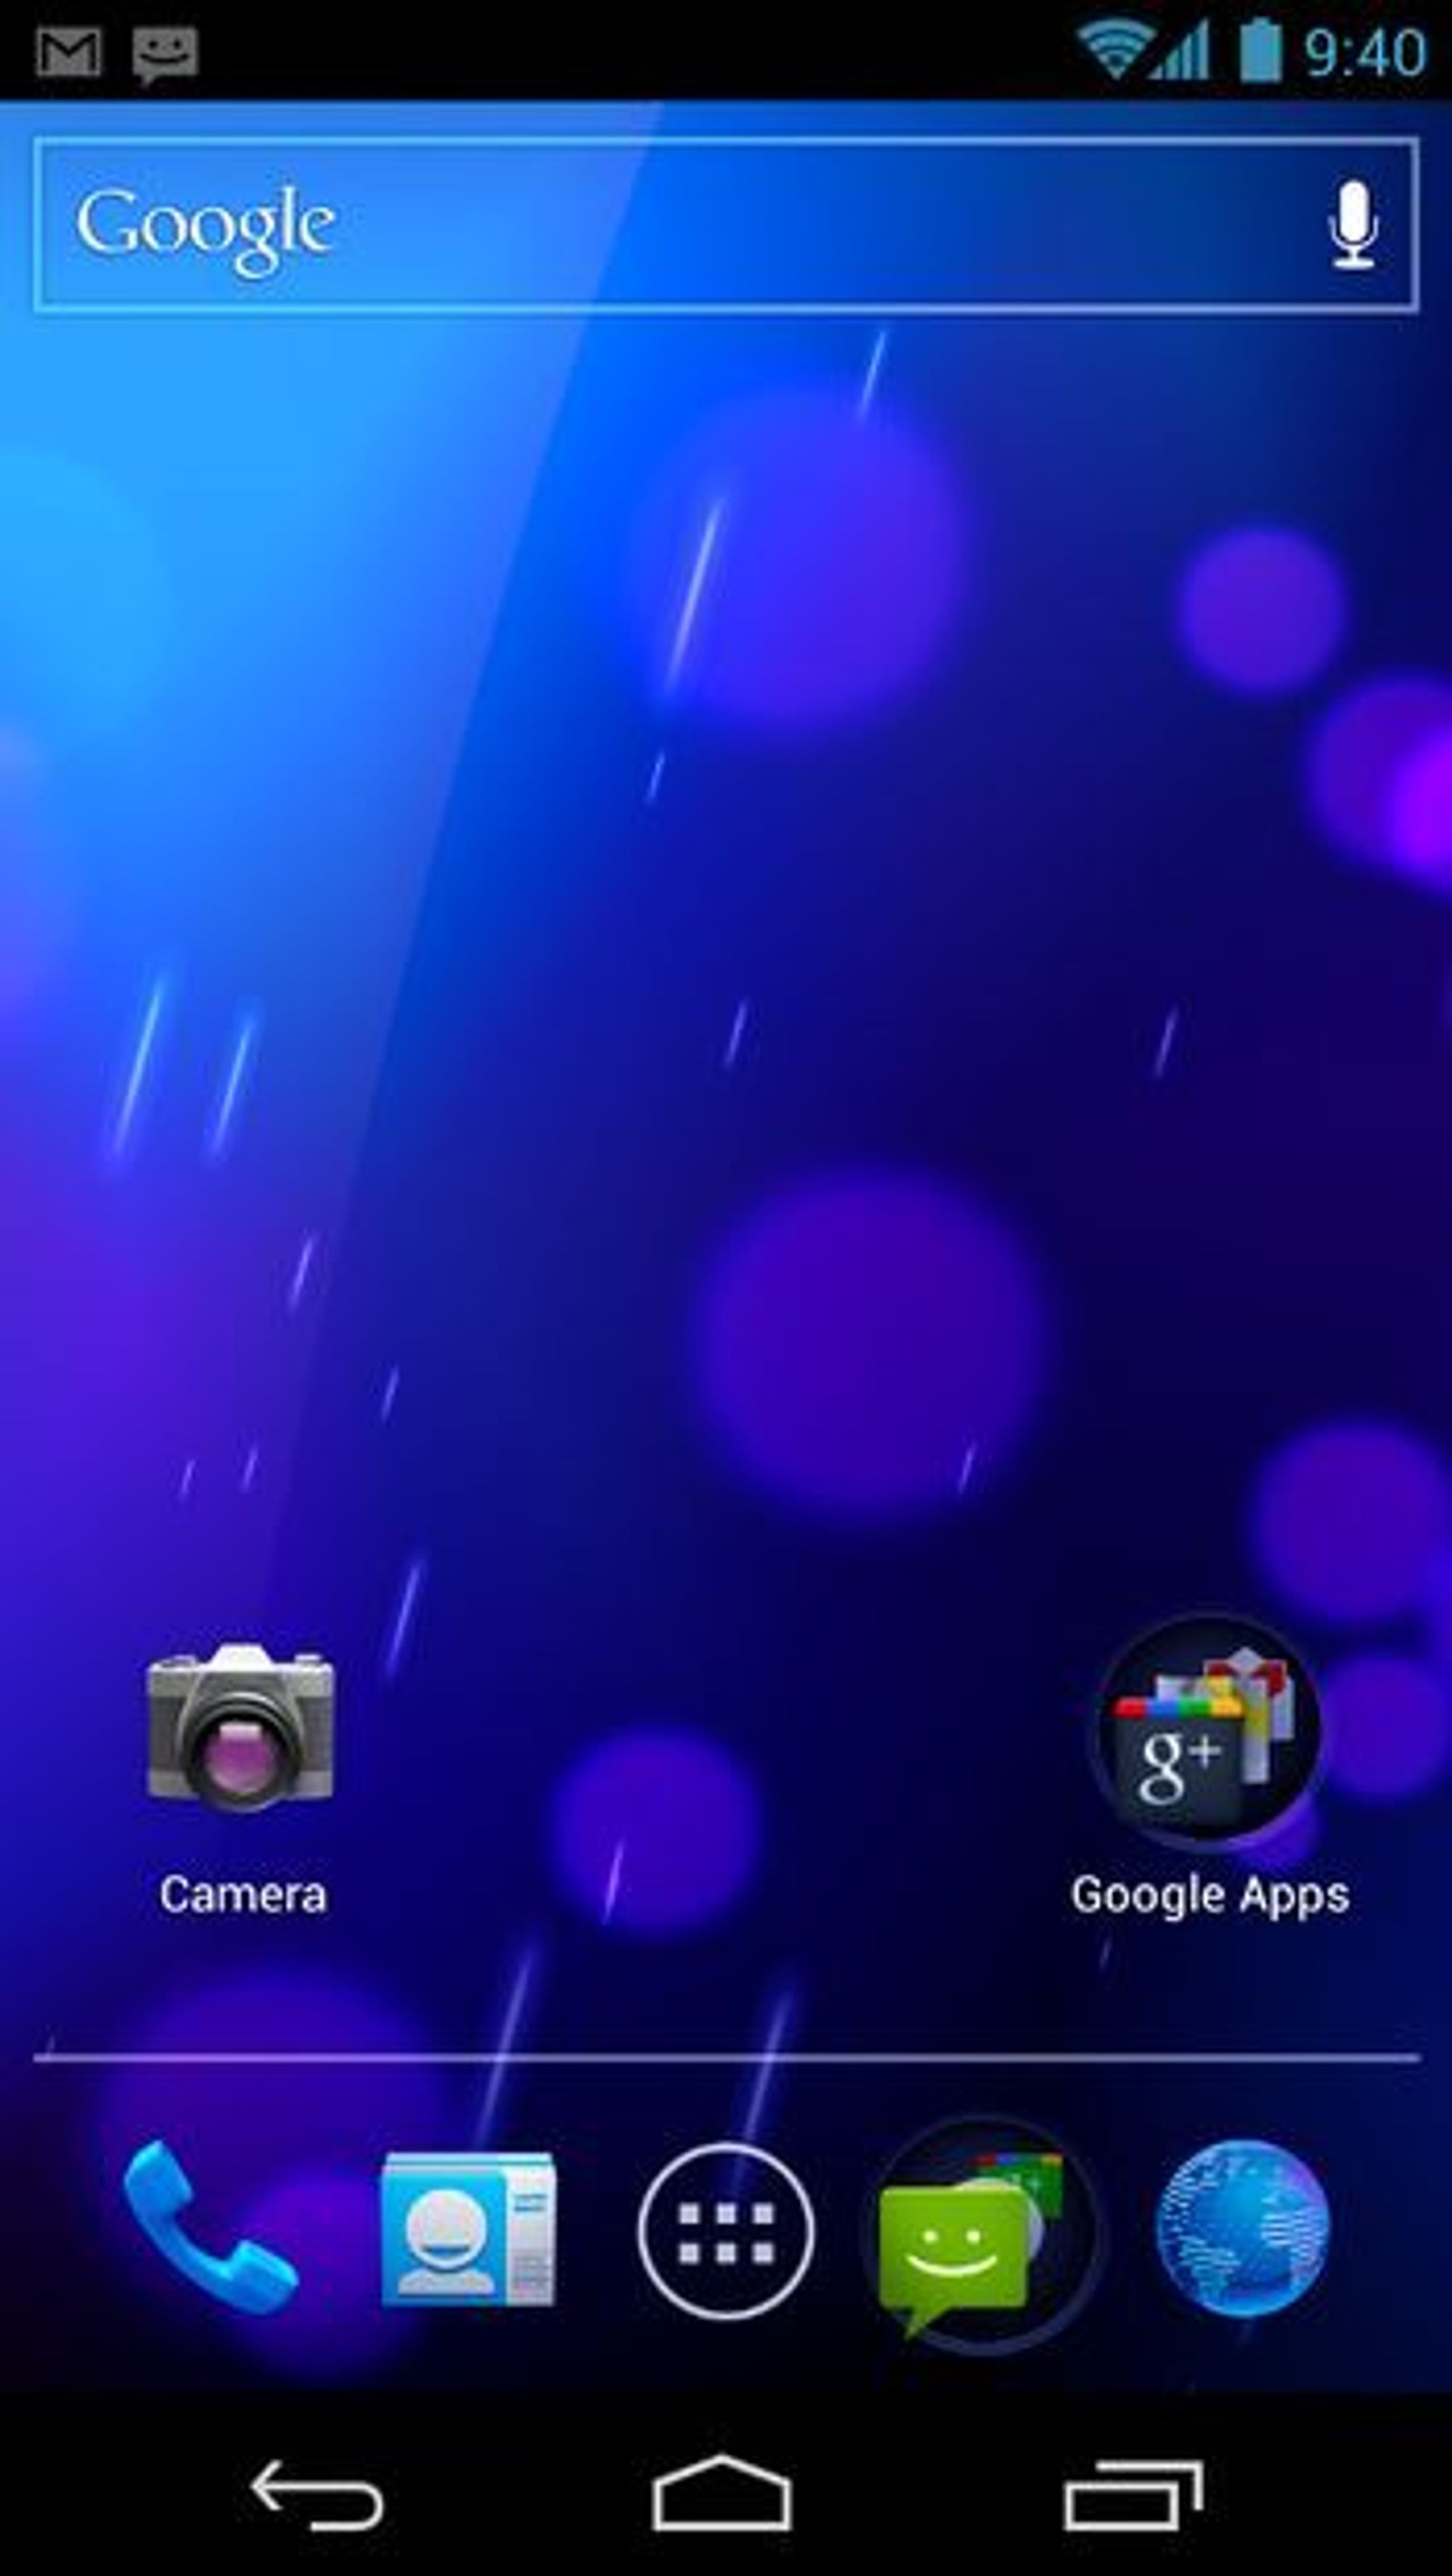 Standard hjemmeskjerm i Android 4.0